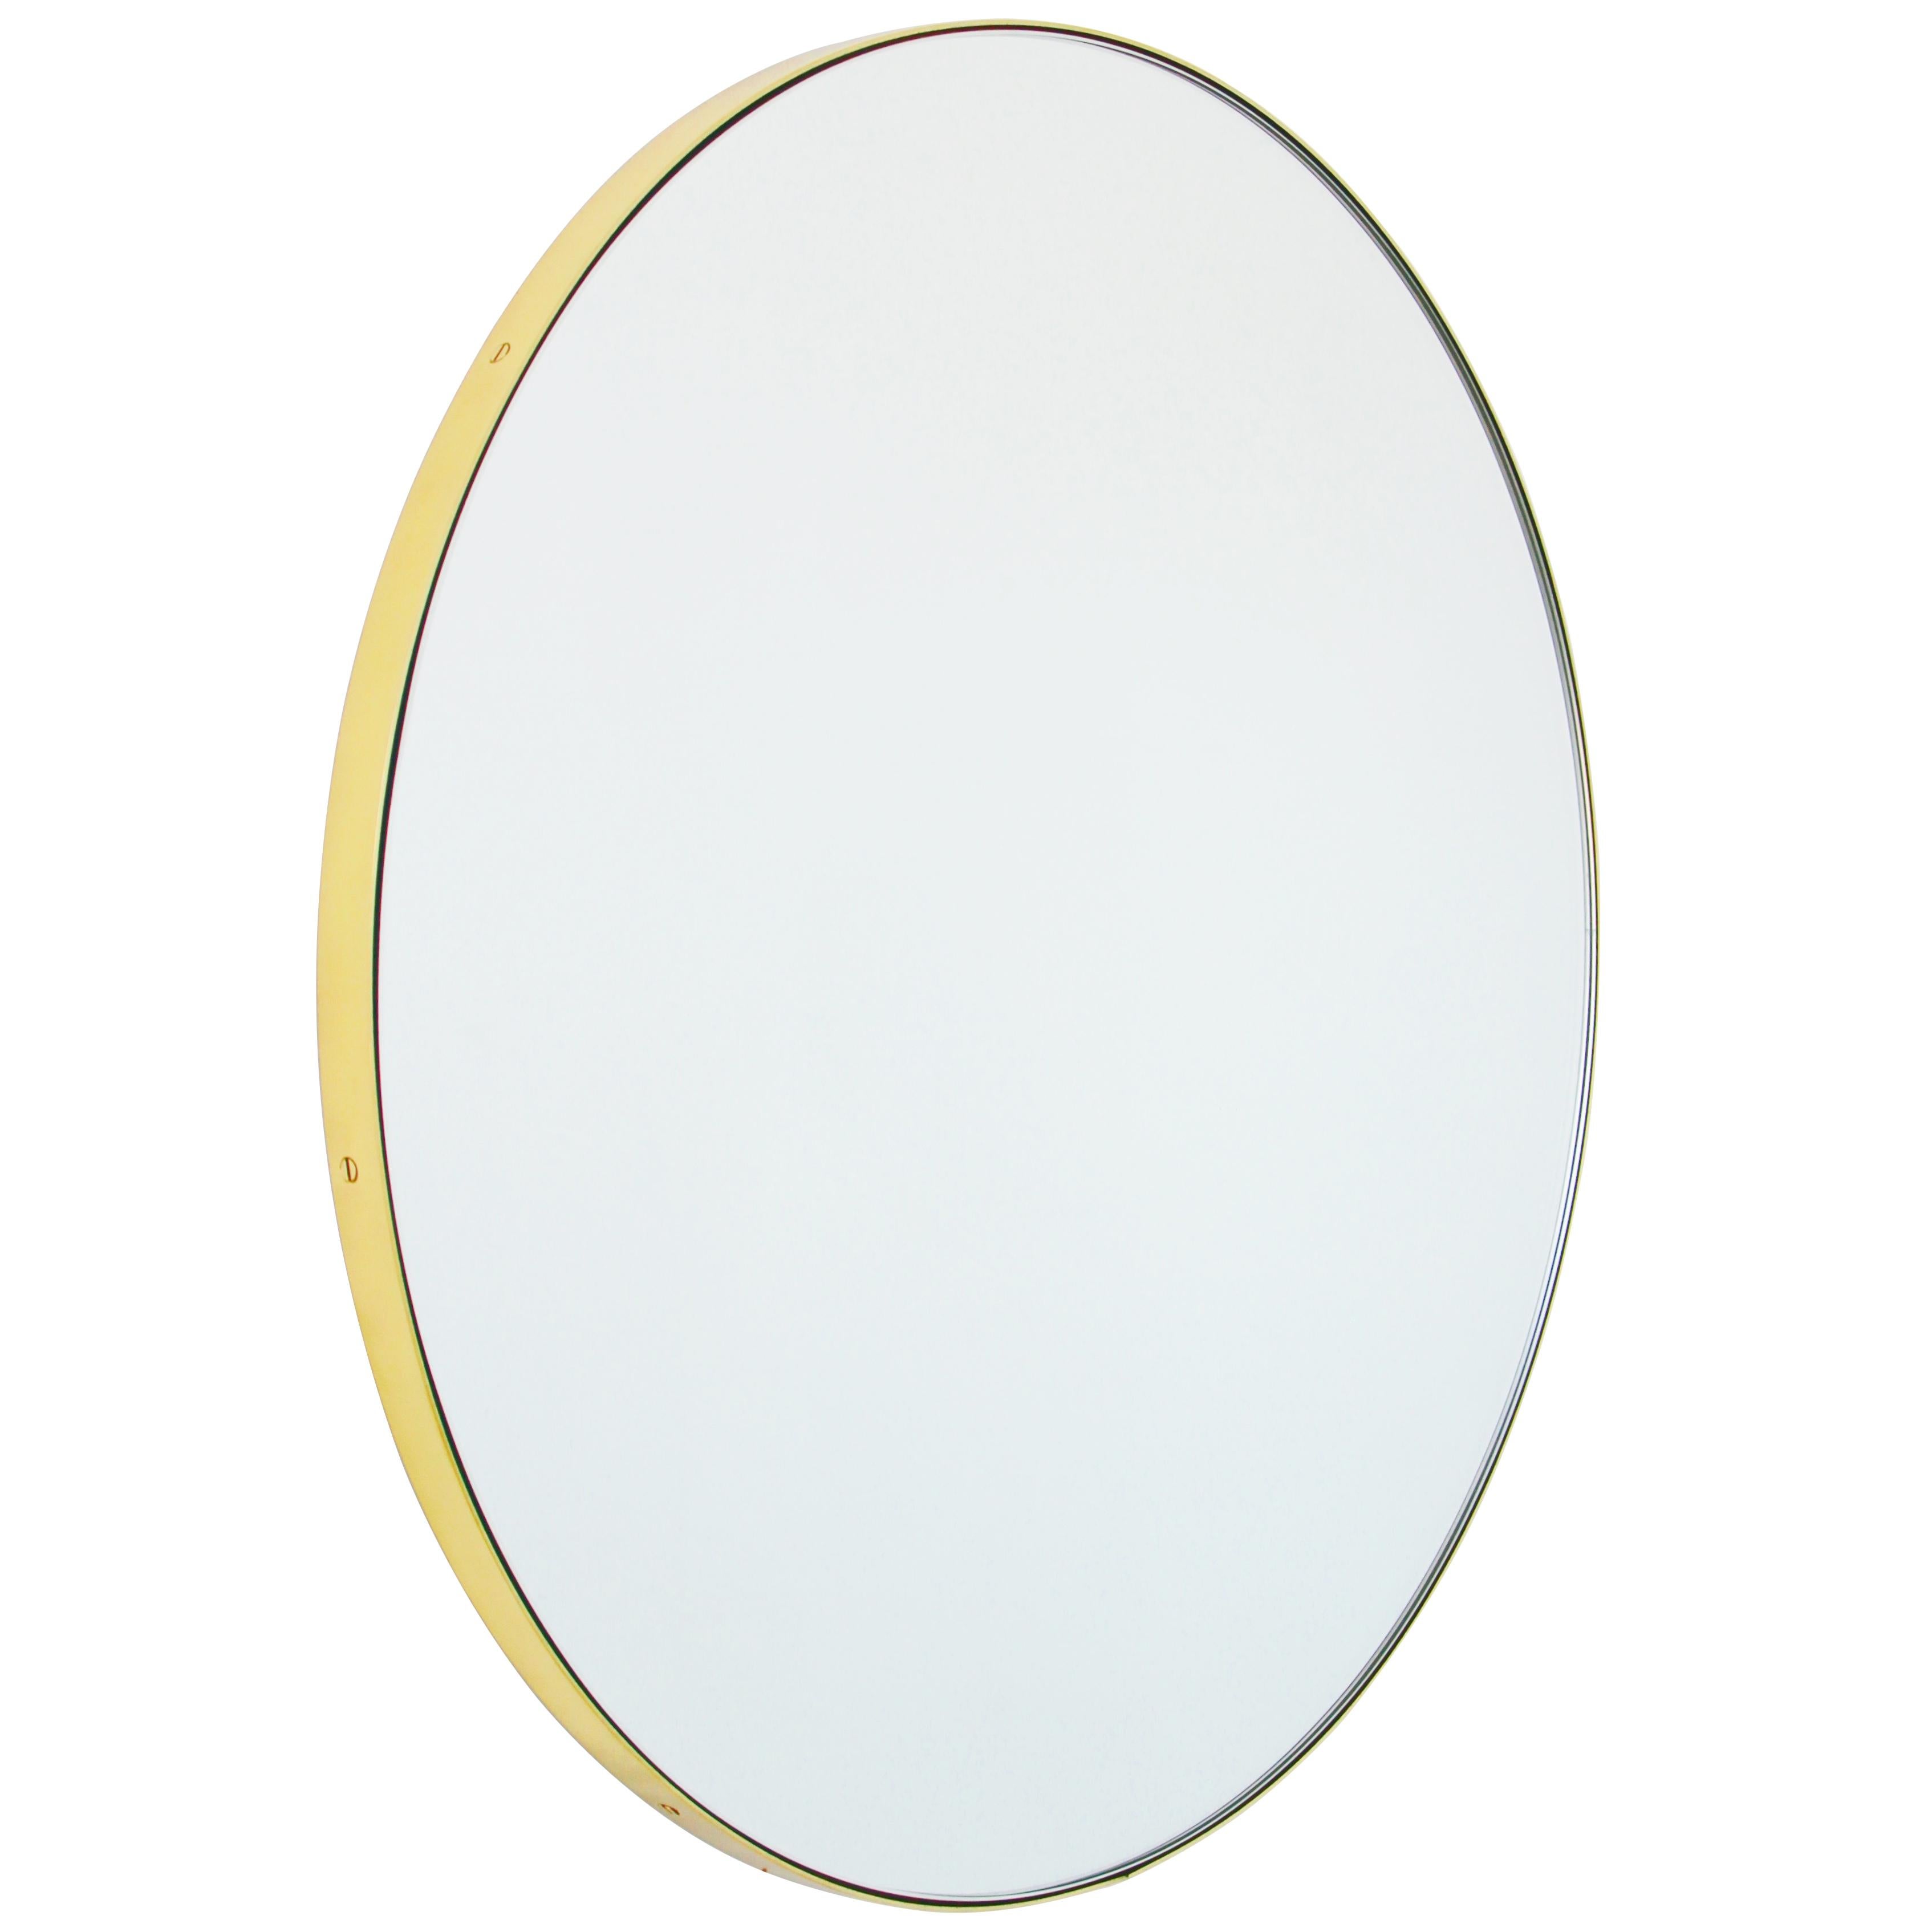 Orbis Round Minimalist Contemporary Mirror with a Brass Frame, Medium